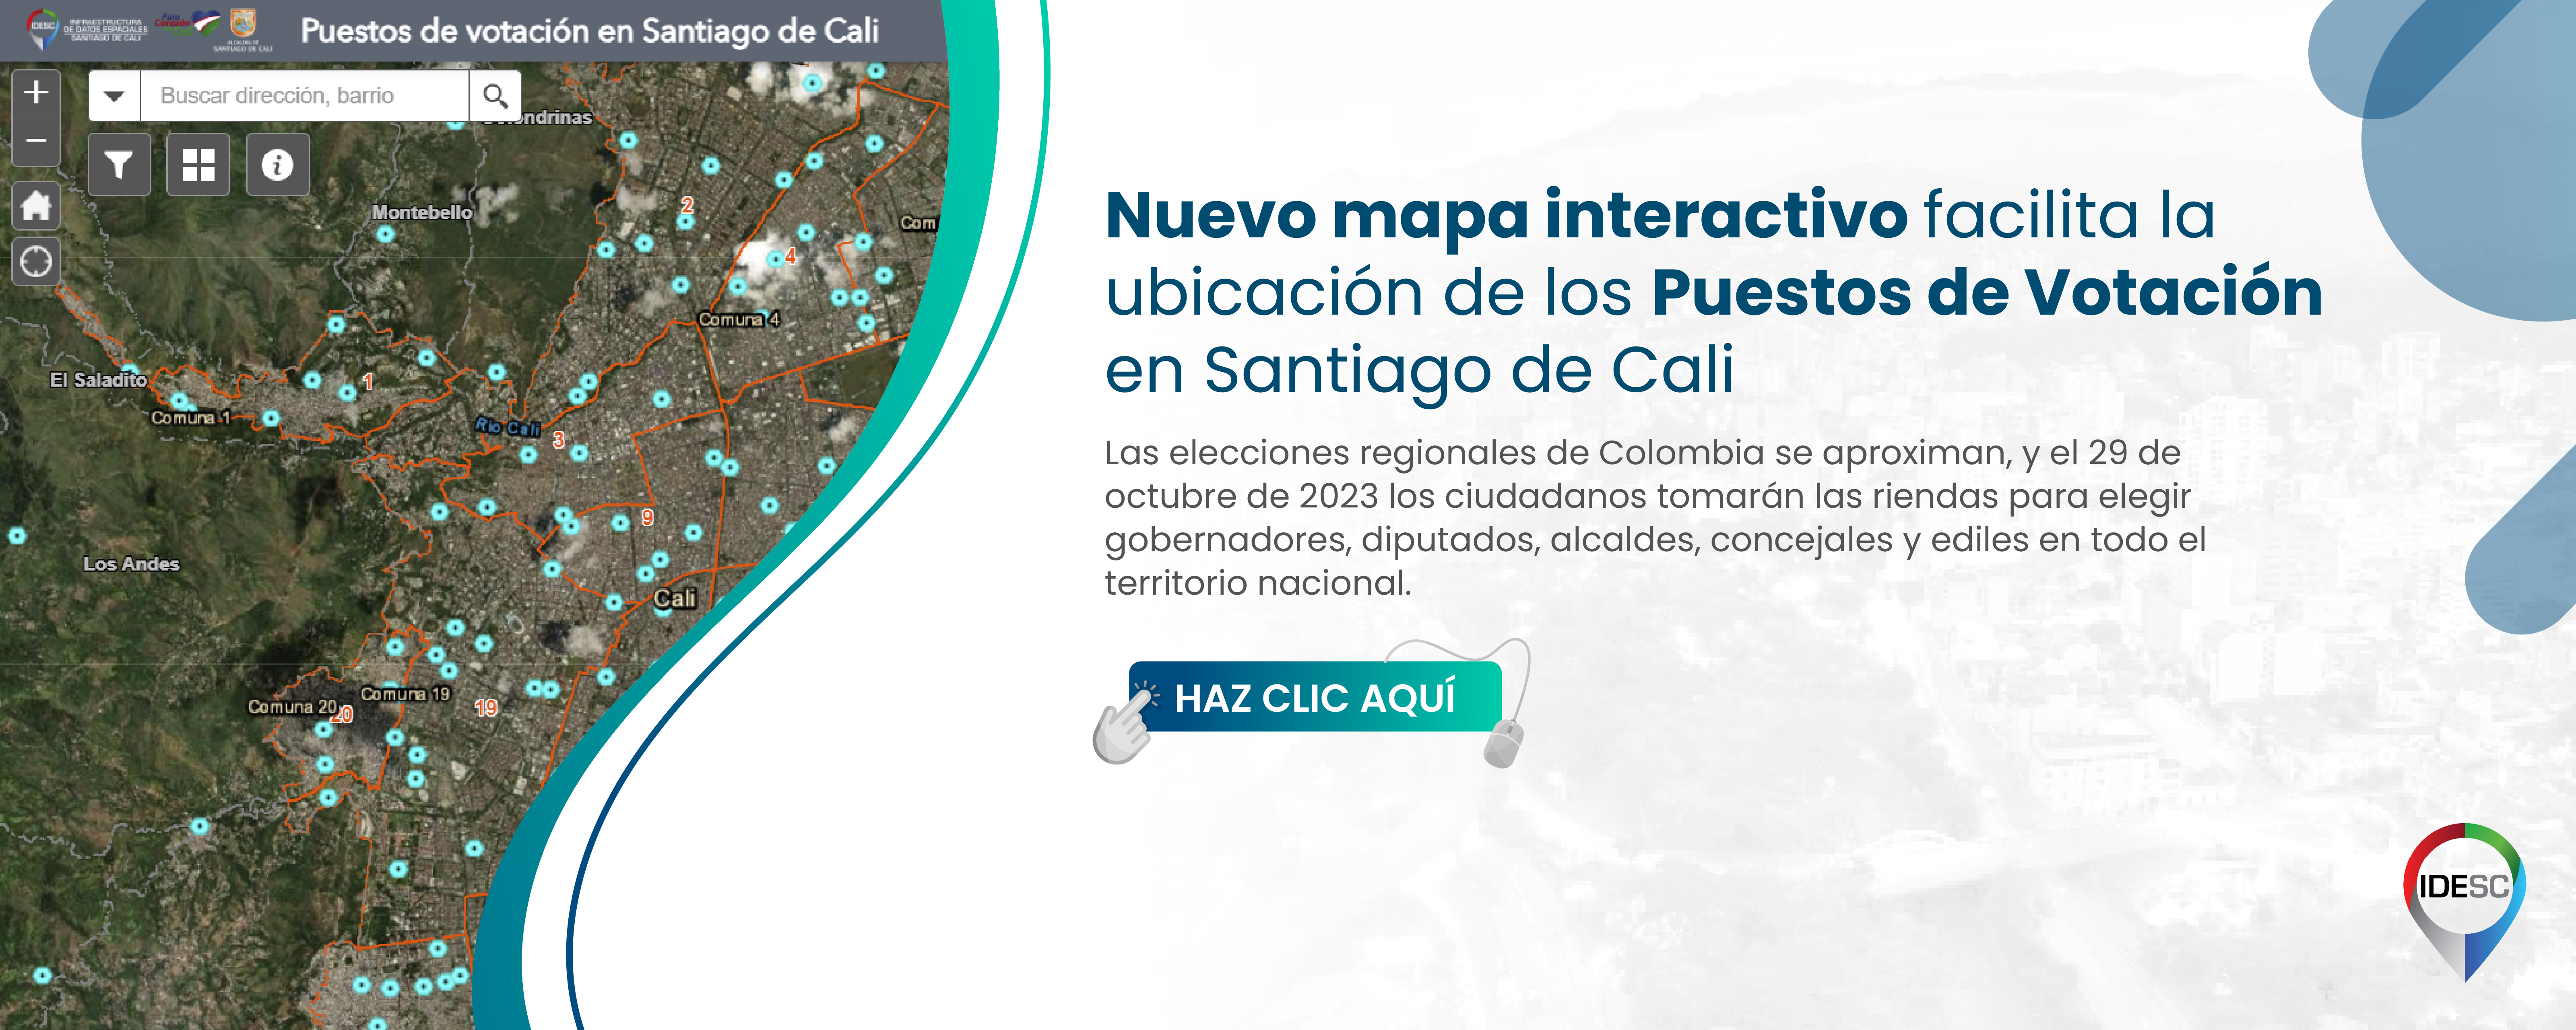 Pieza gráfica que contiene al lado izquierdo el mapa de Santiago de Cali con la localización de los puestos de votación en color cian y al costado derecho el título de la noticia y debajo un breve resumen.